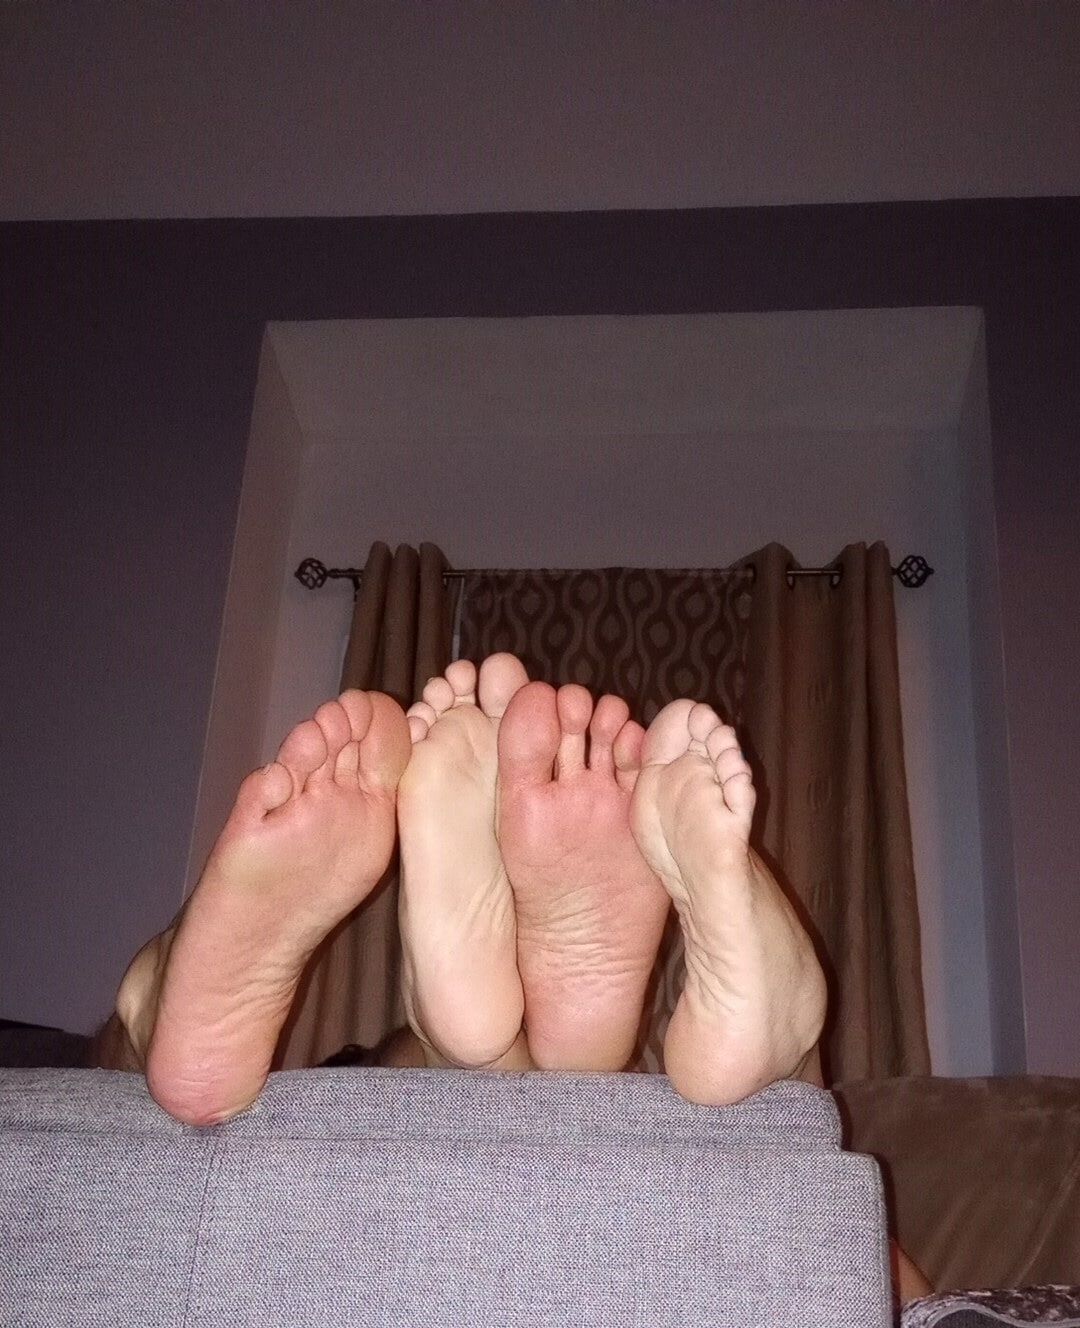 Do you like our feet together #12